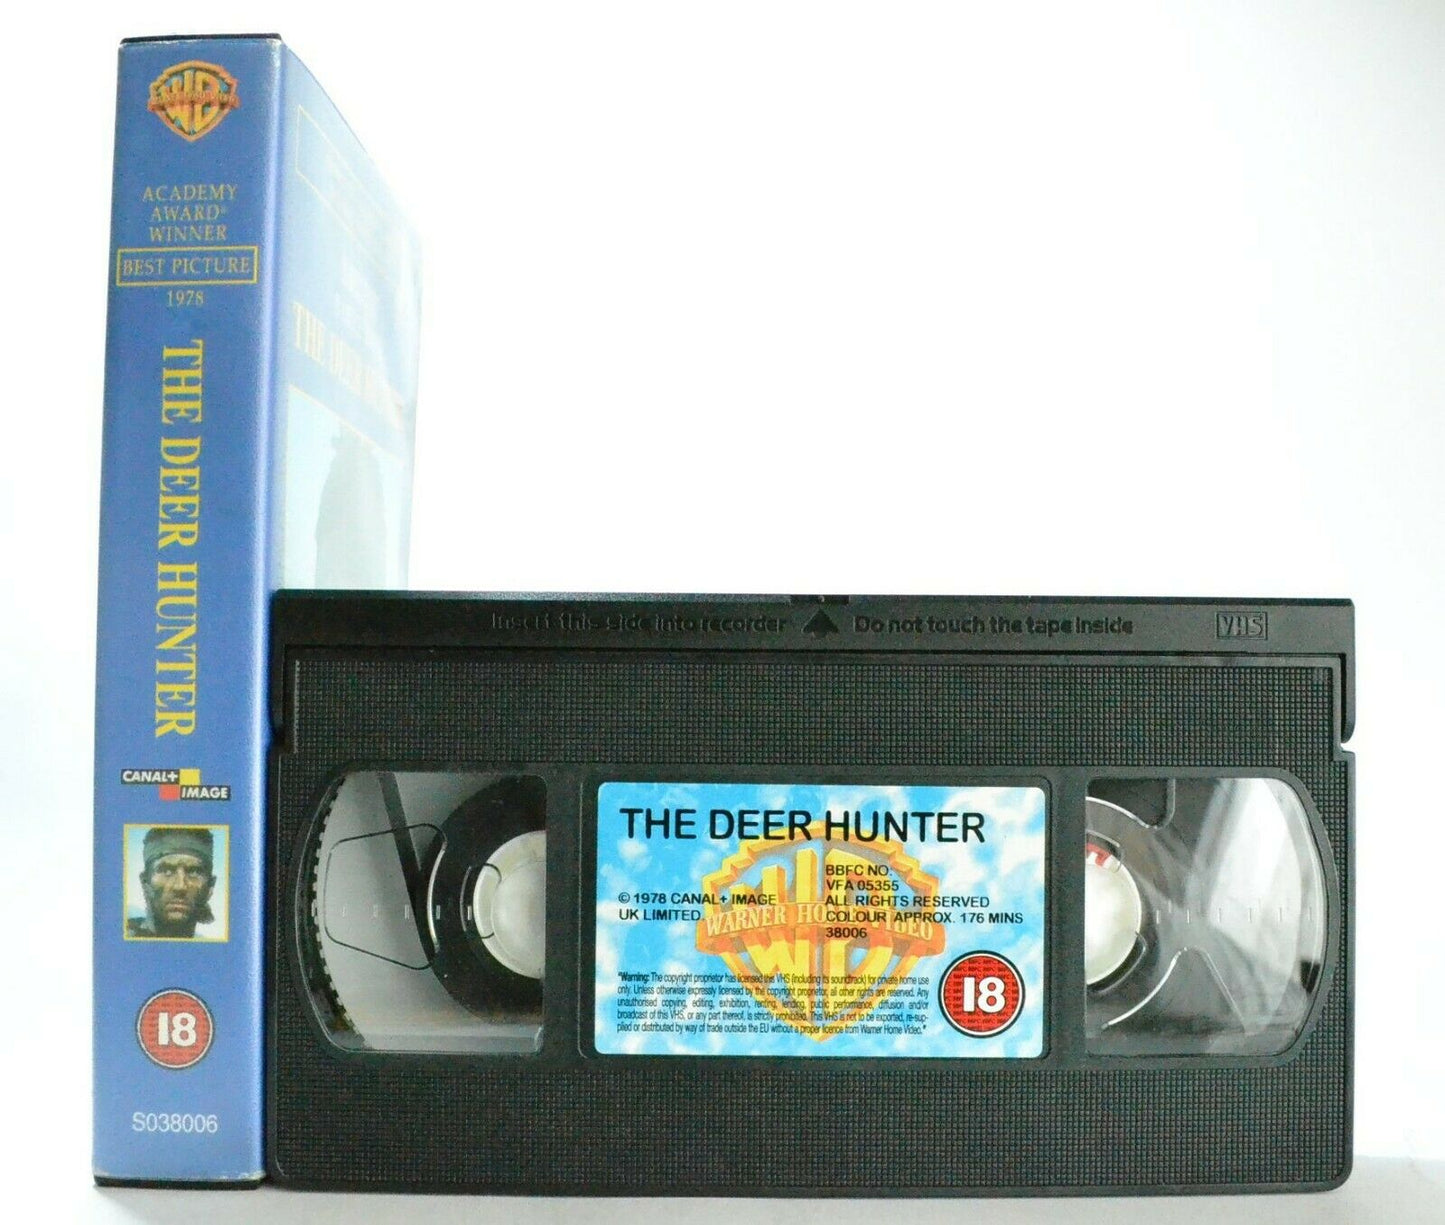 The Deer Hunter: Epic War Drama (1978) - Vietnam War - Robert De Niro - Pal VHS-